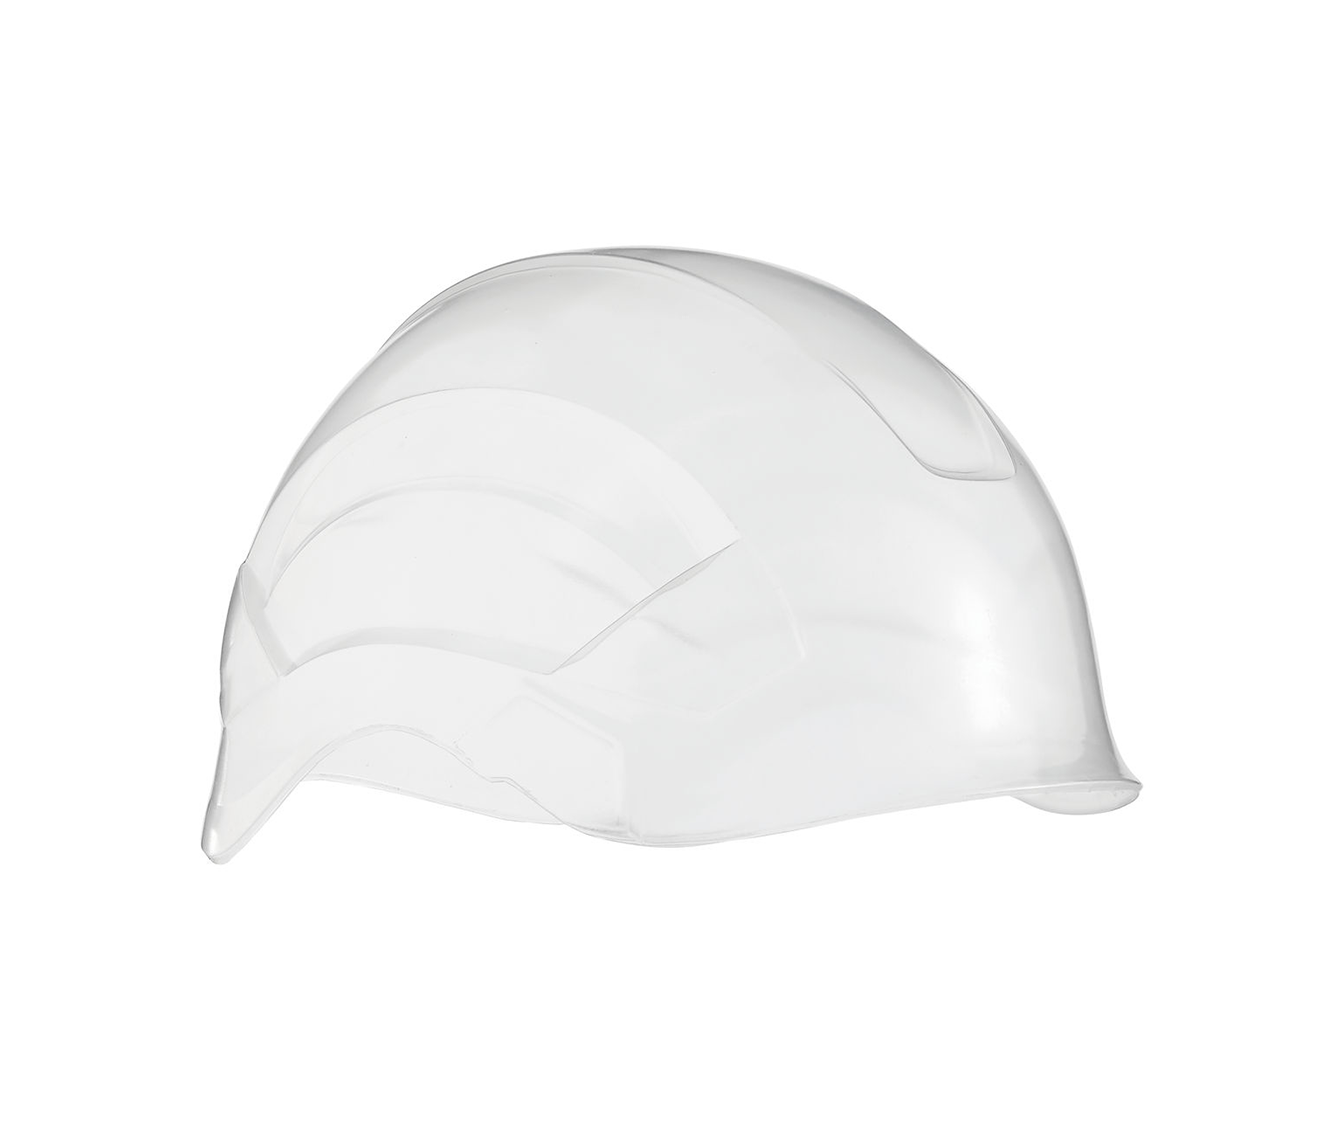 Protection for VERTEX helmet